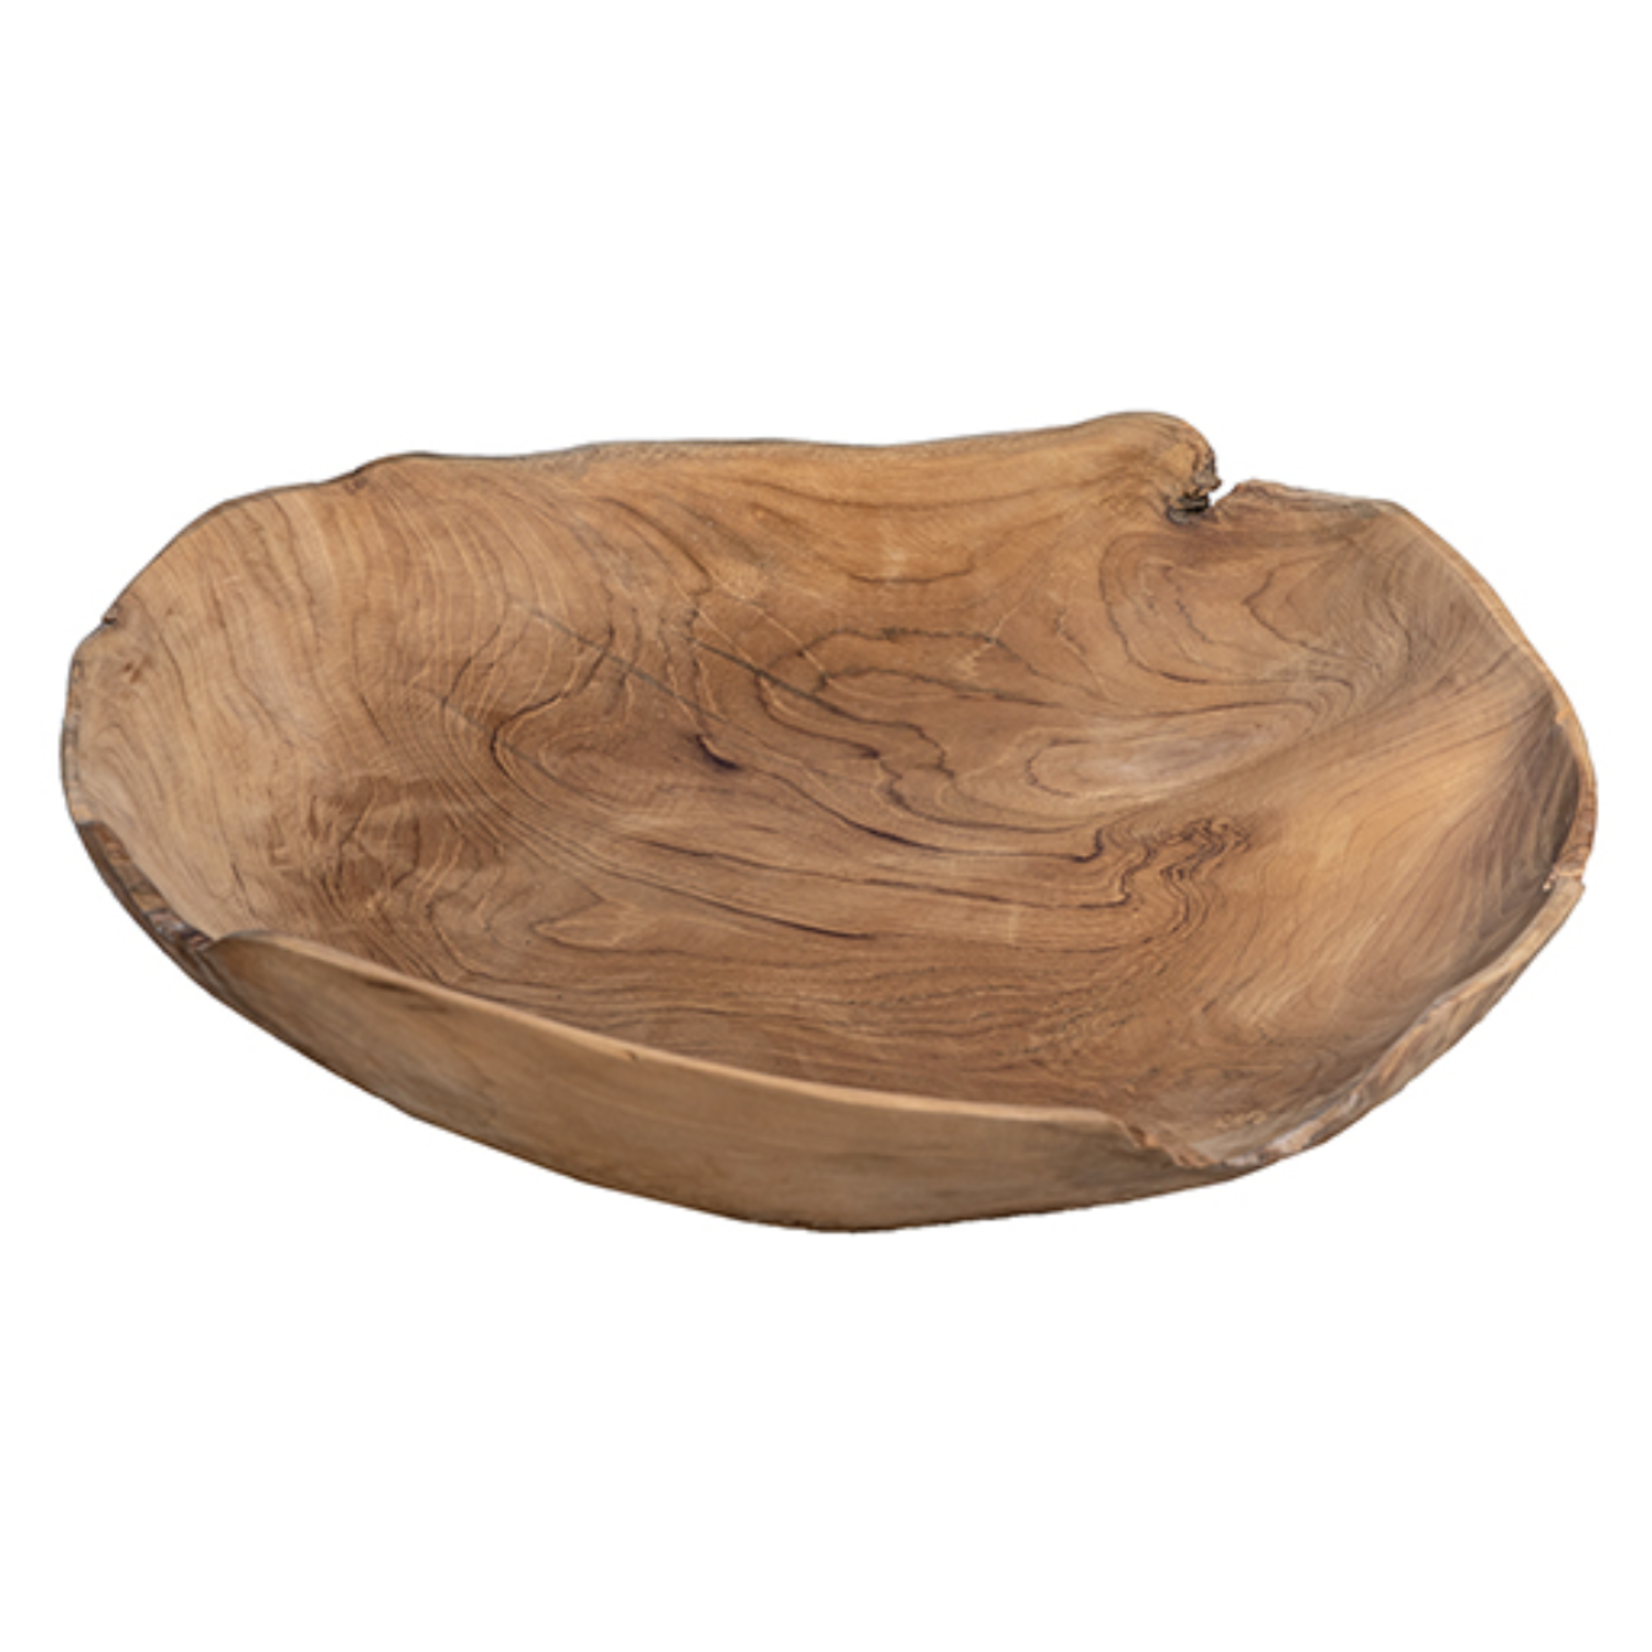 20" Teak Root Wood Bowl